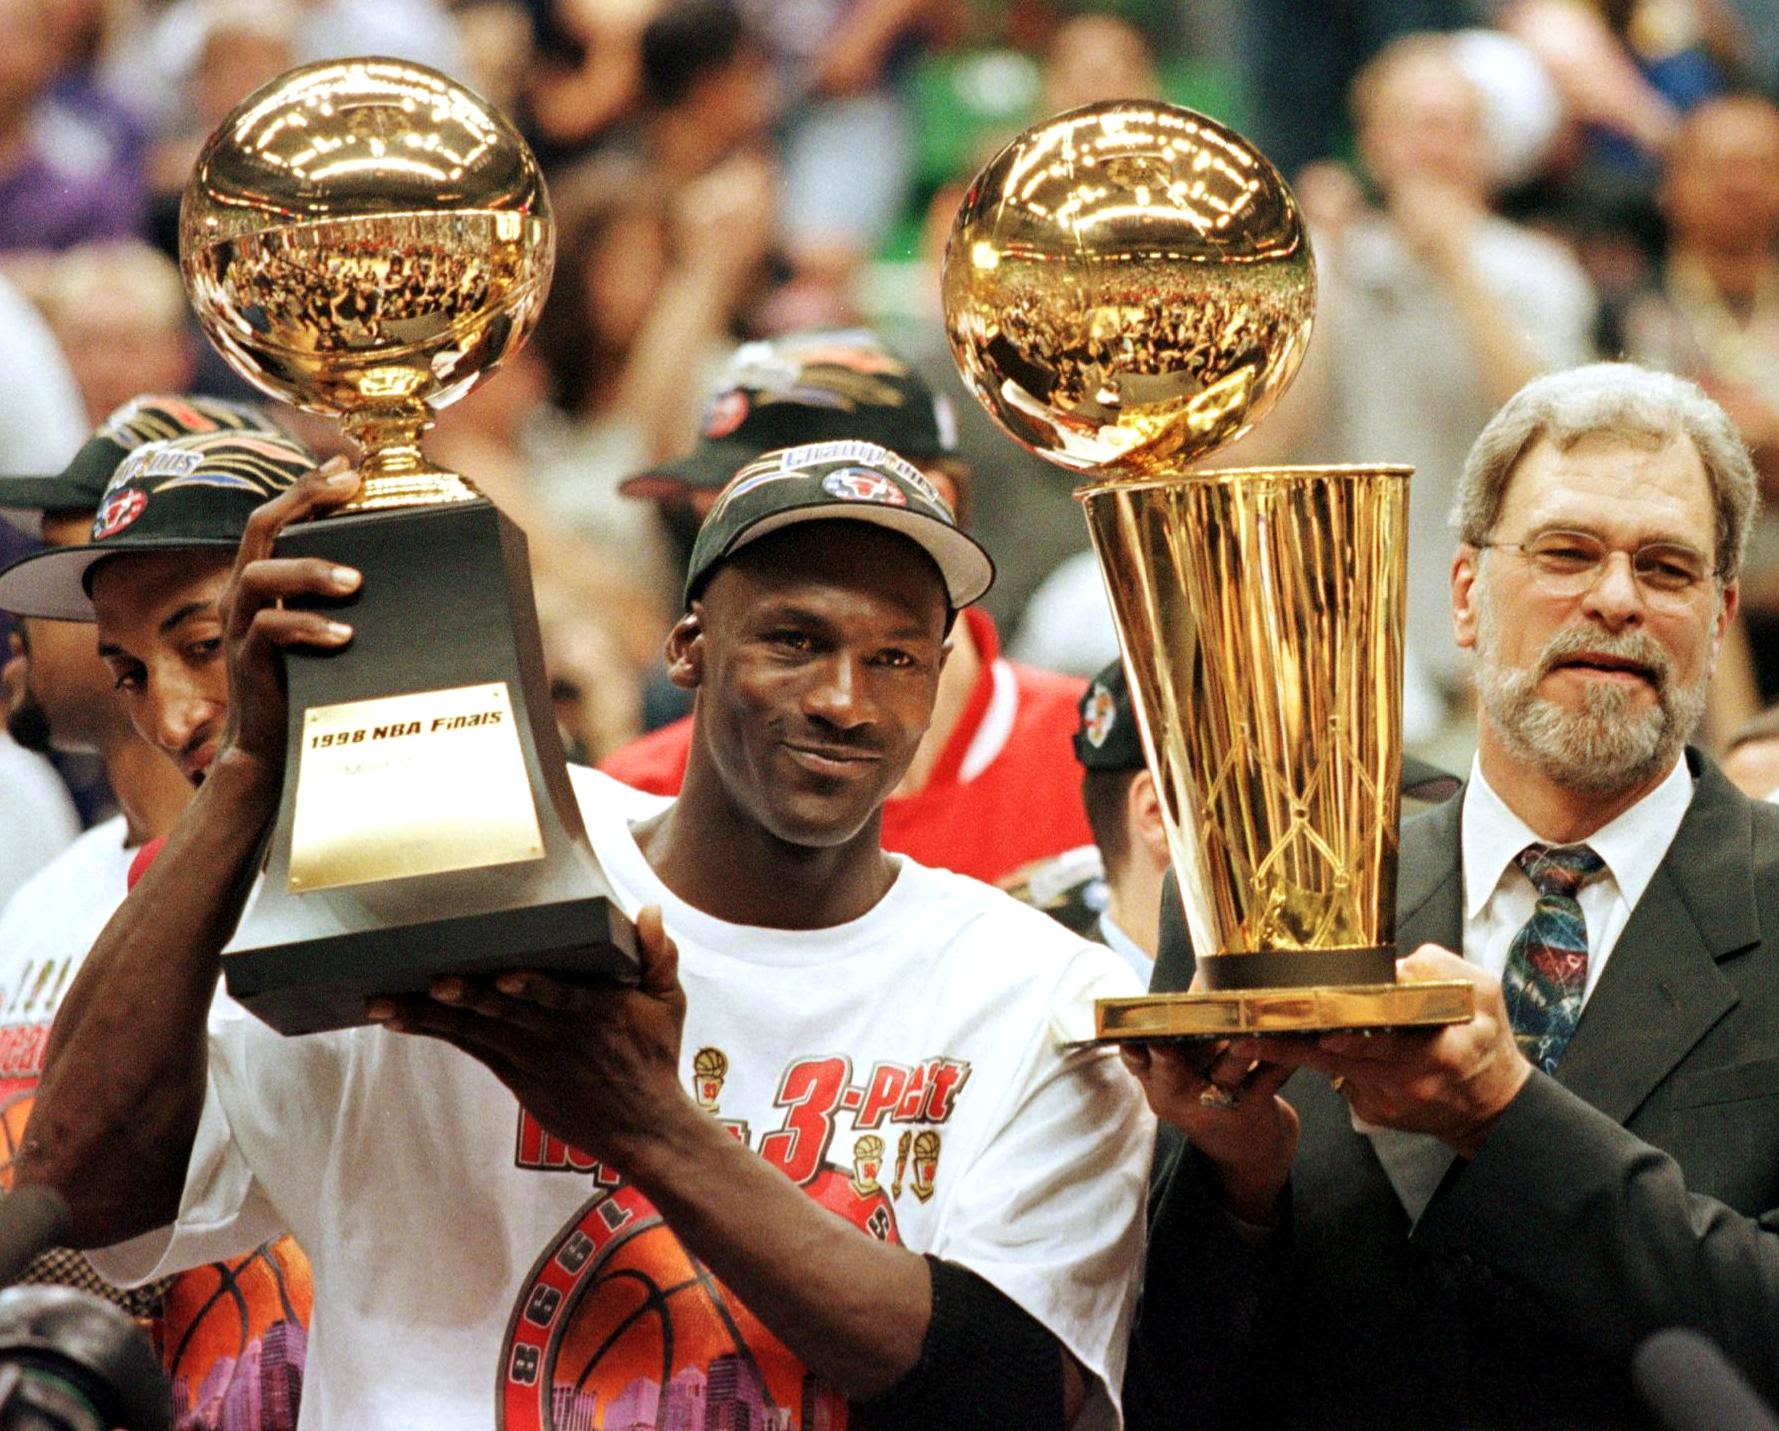 $5,000,000! That's how much Michael Jordan's 1998 NBA Finals